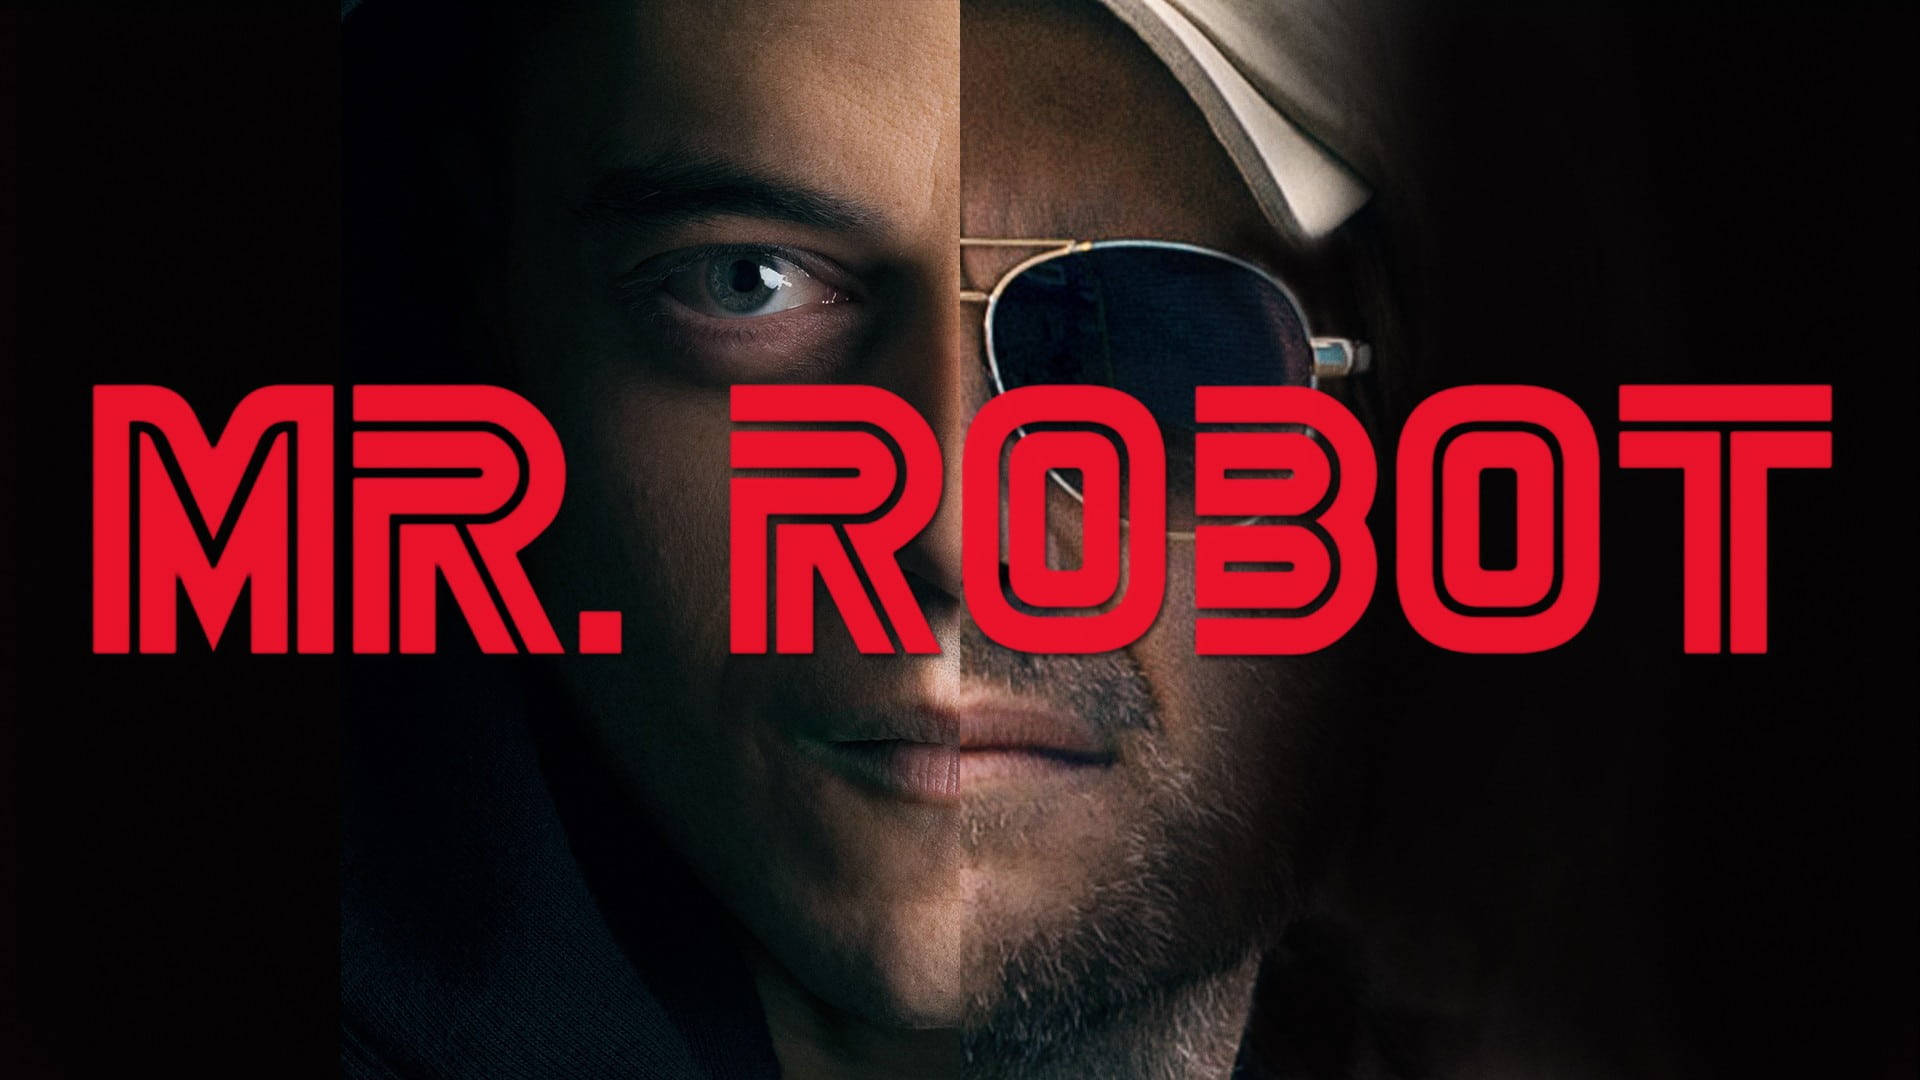 Mr. Robot Season 1 Wallpaper